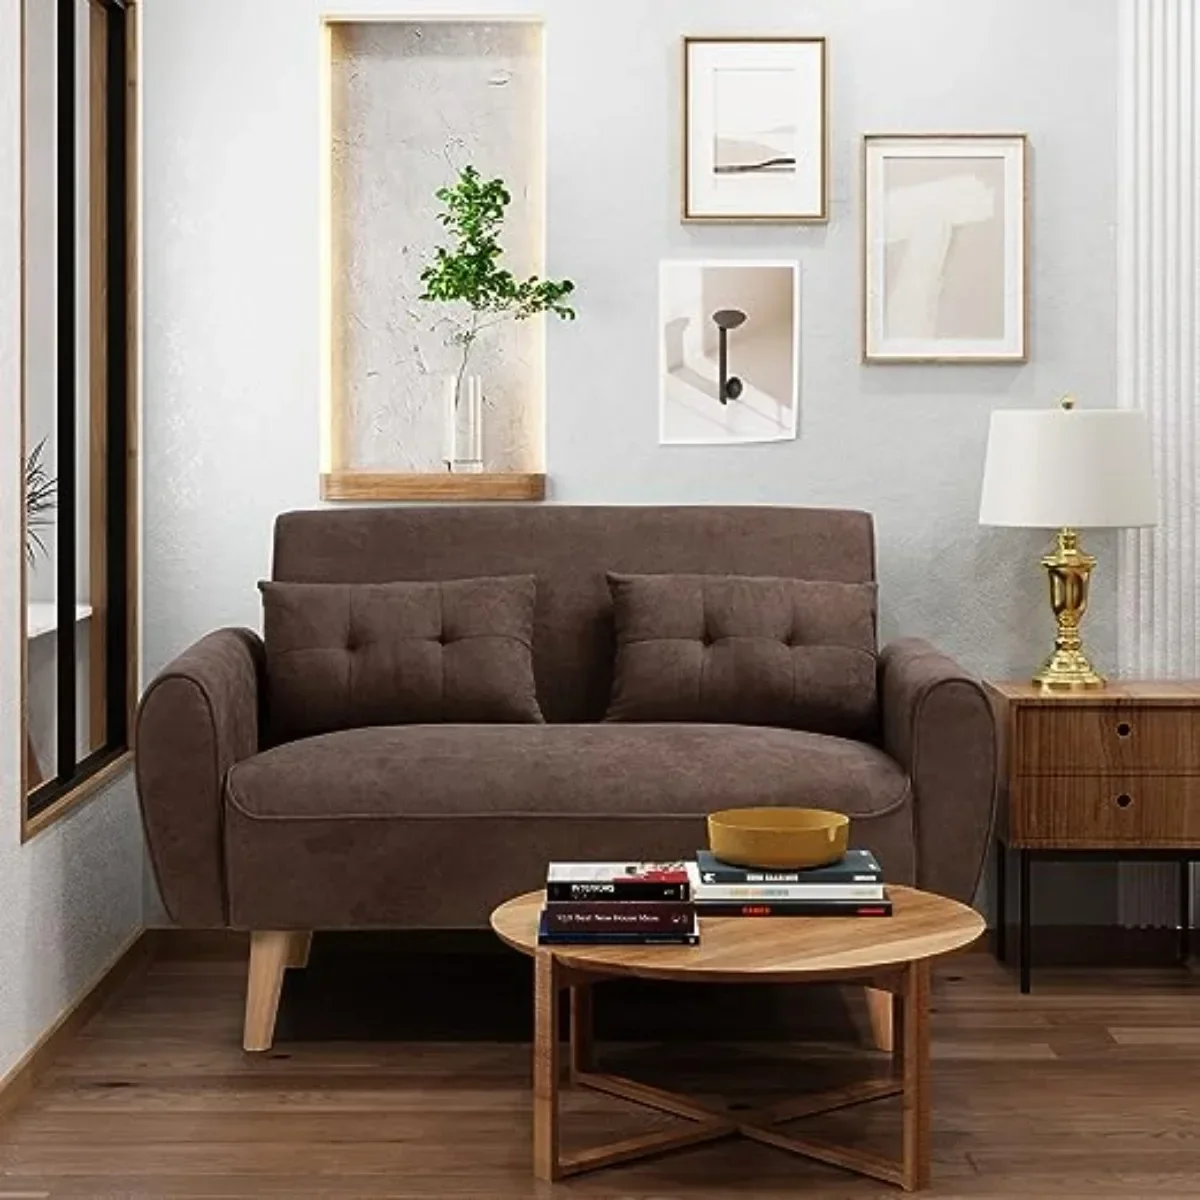 

Маленький современный диван для влюбленных, 47 дюймов, двухместный диван с тканевой обивкой, мебель для влюбленных с 2 подушками, коричневый цвет